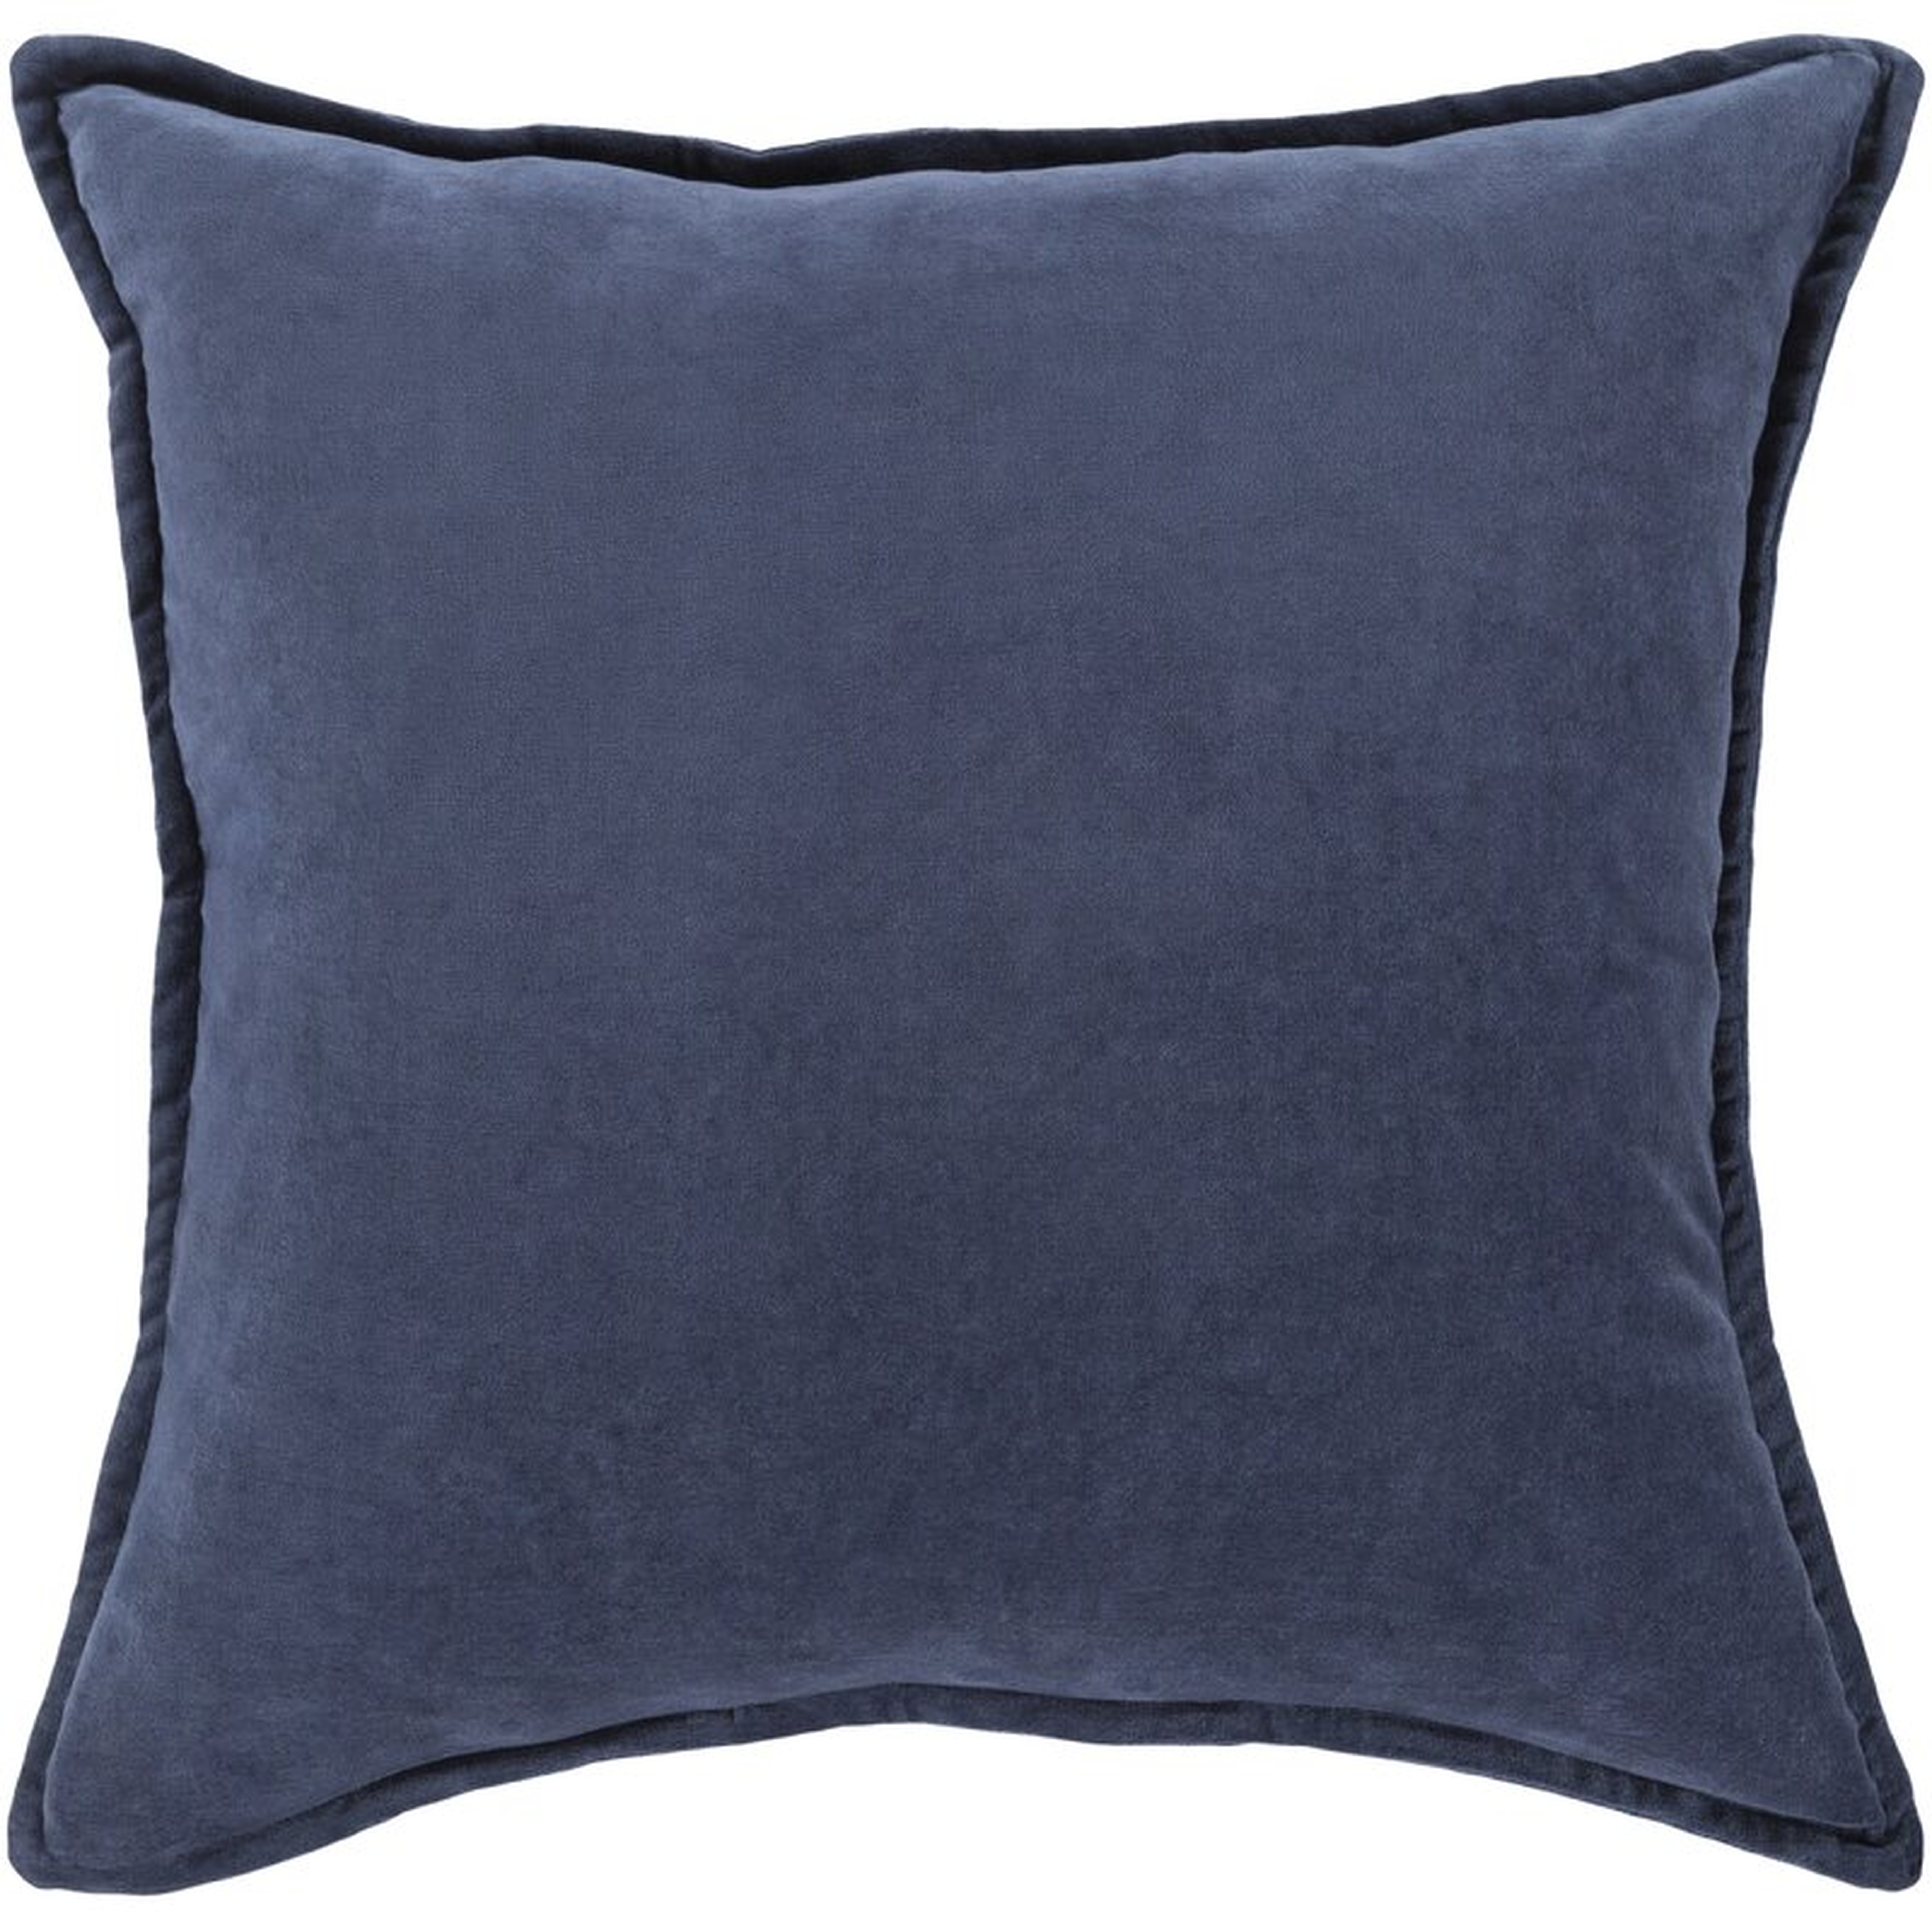 Cotton Throw Pillow Cover - AllModern